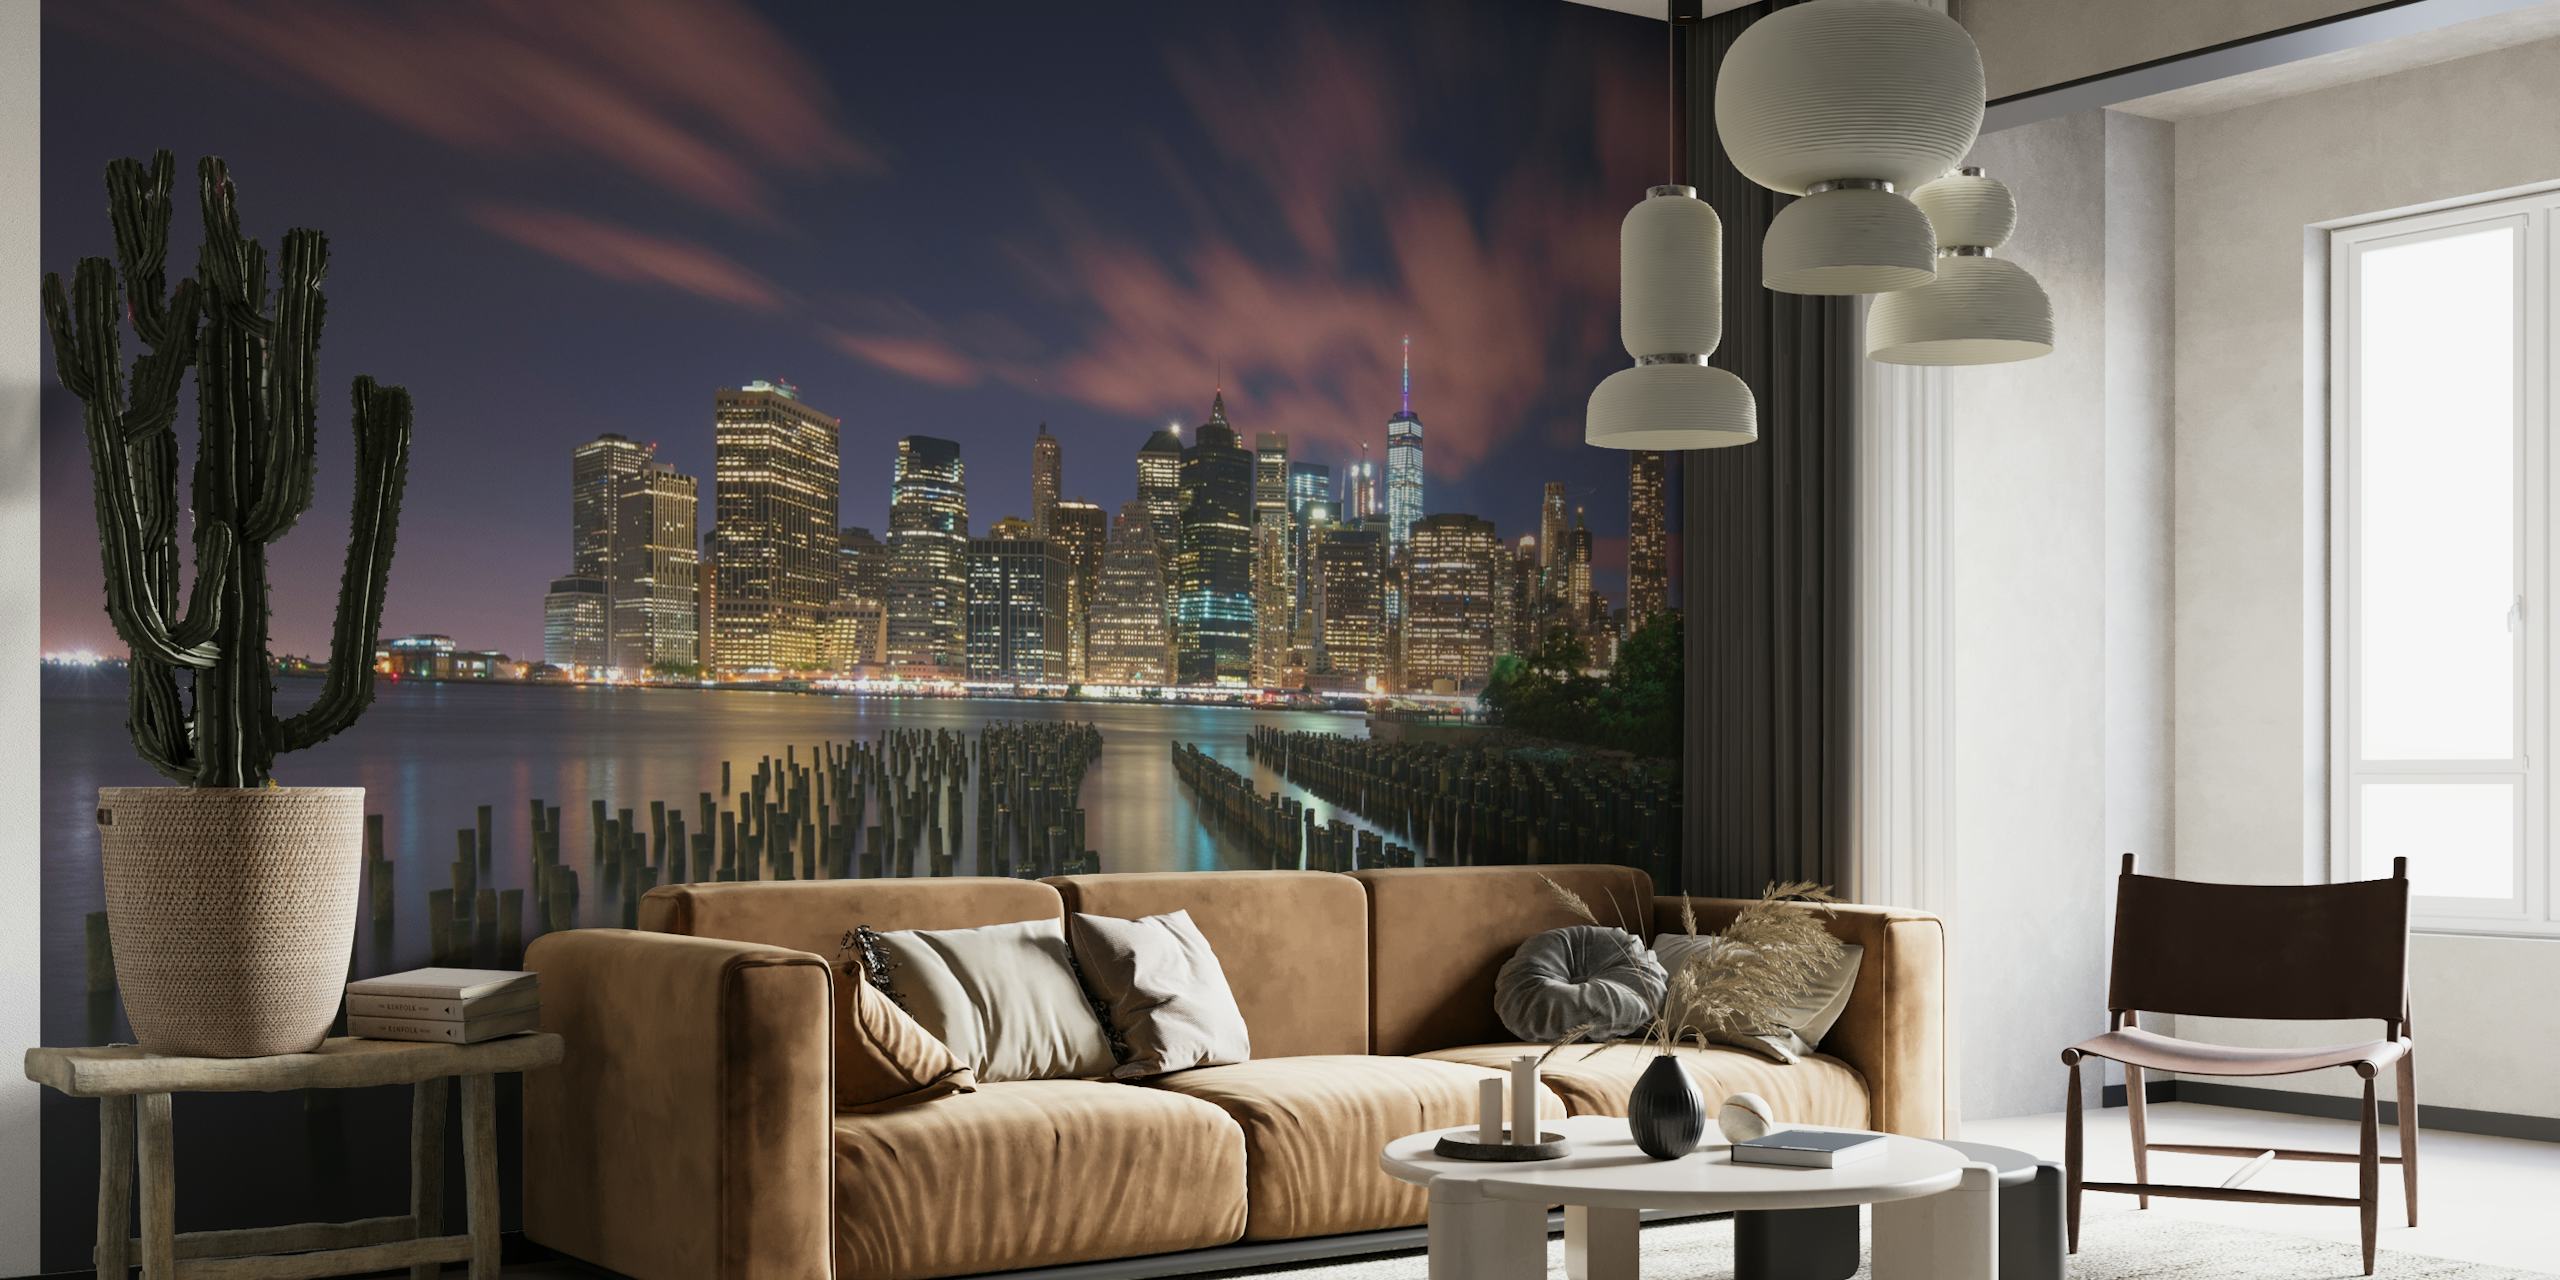 Skyline di New York City con luci intense che si riflettono nell'acqua di notte